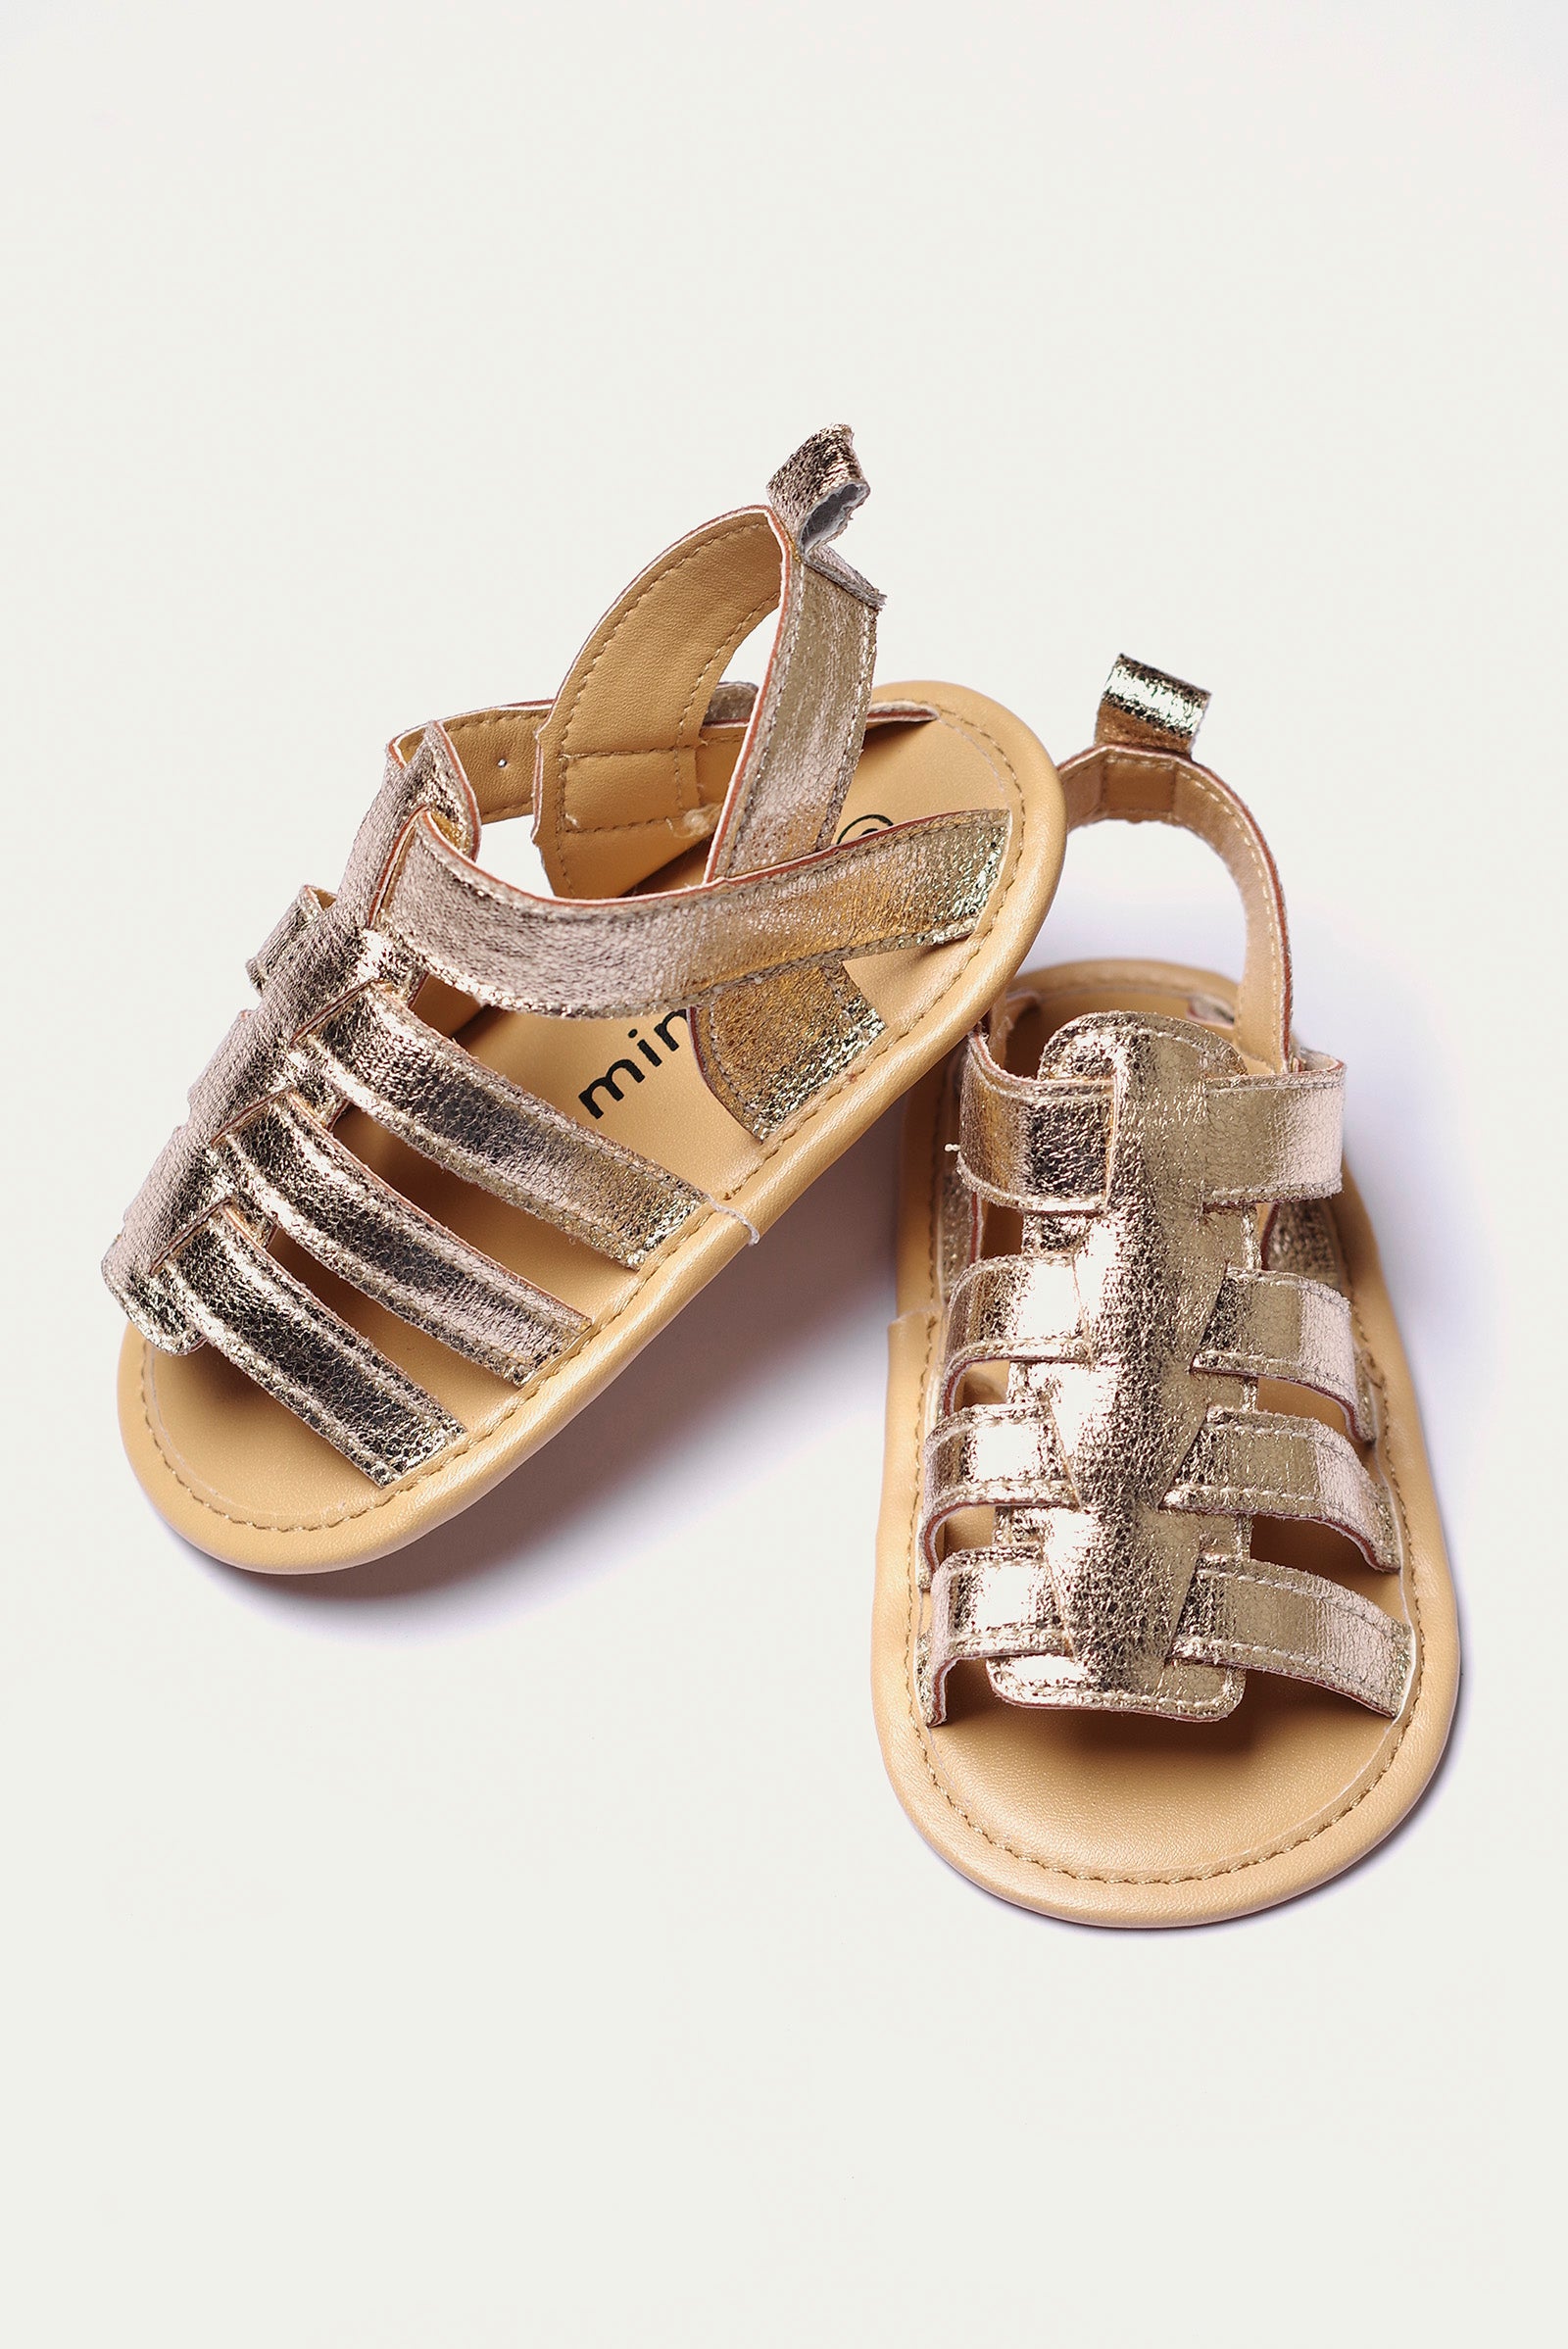 sandals (MTG-058)